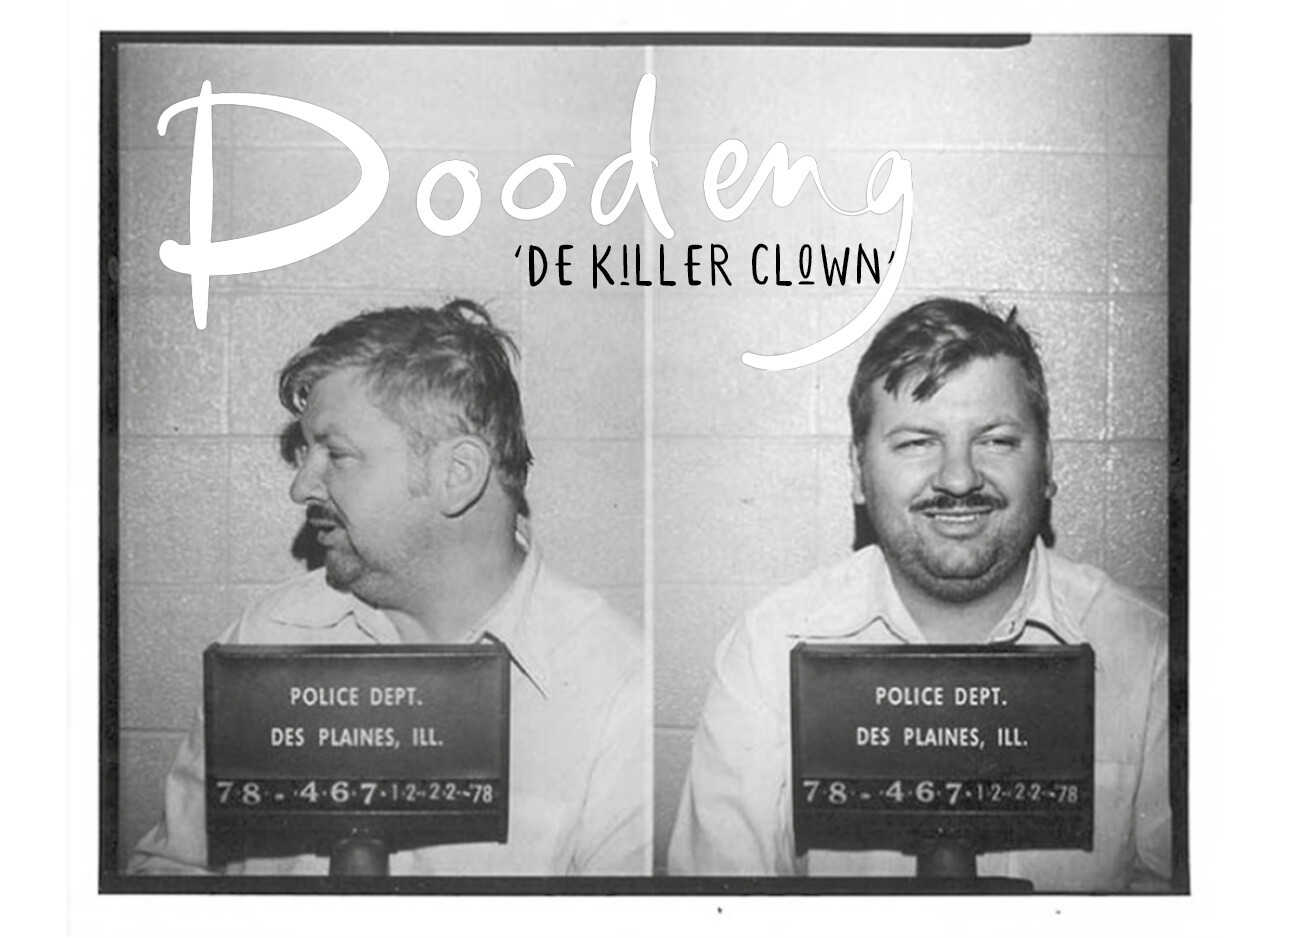 Killer clown John Wayne Gacy